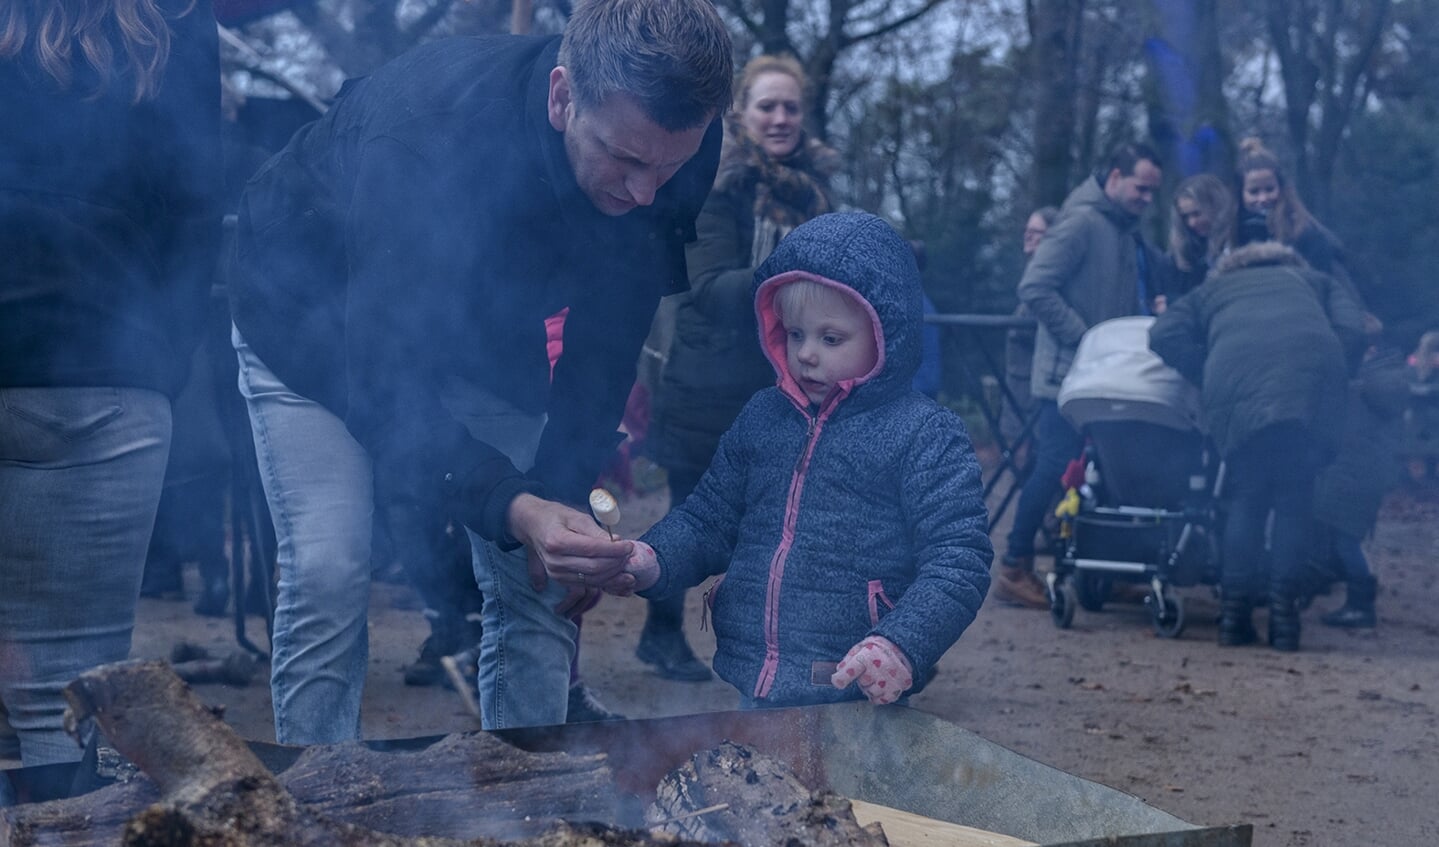 Kinderen krijgen gratis marshmallows om lekker in het vuur te roosteren